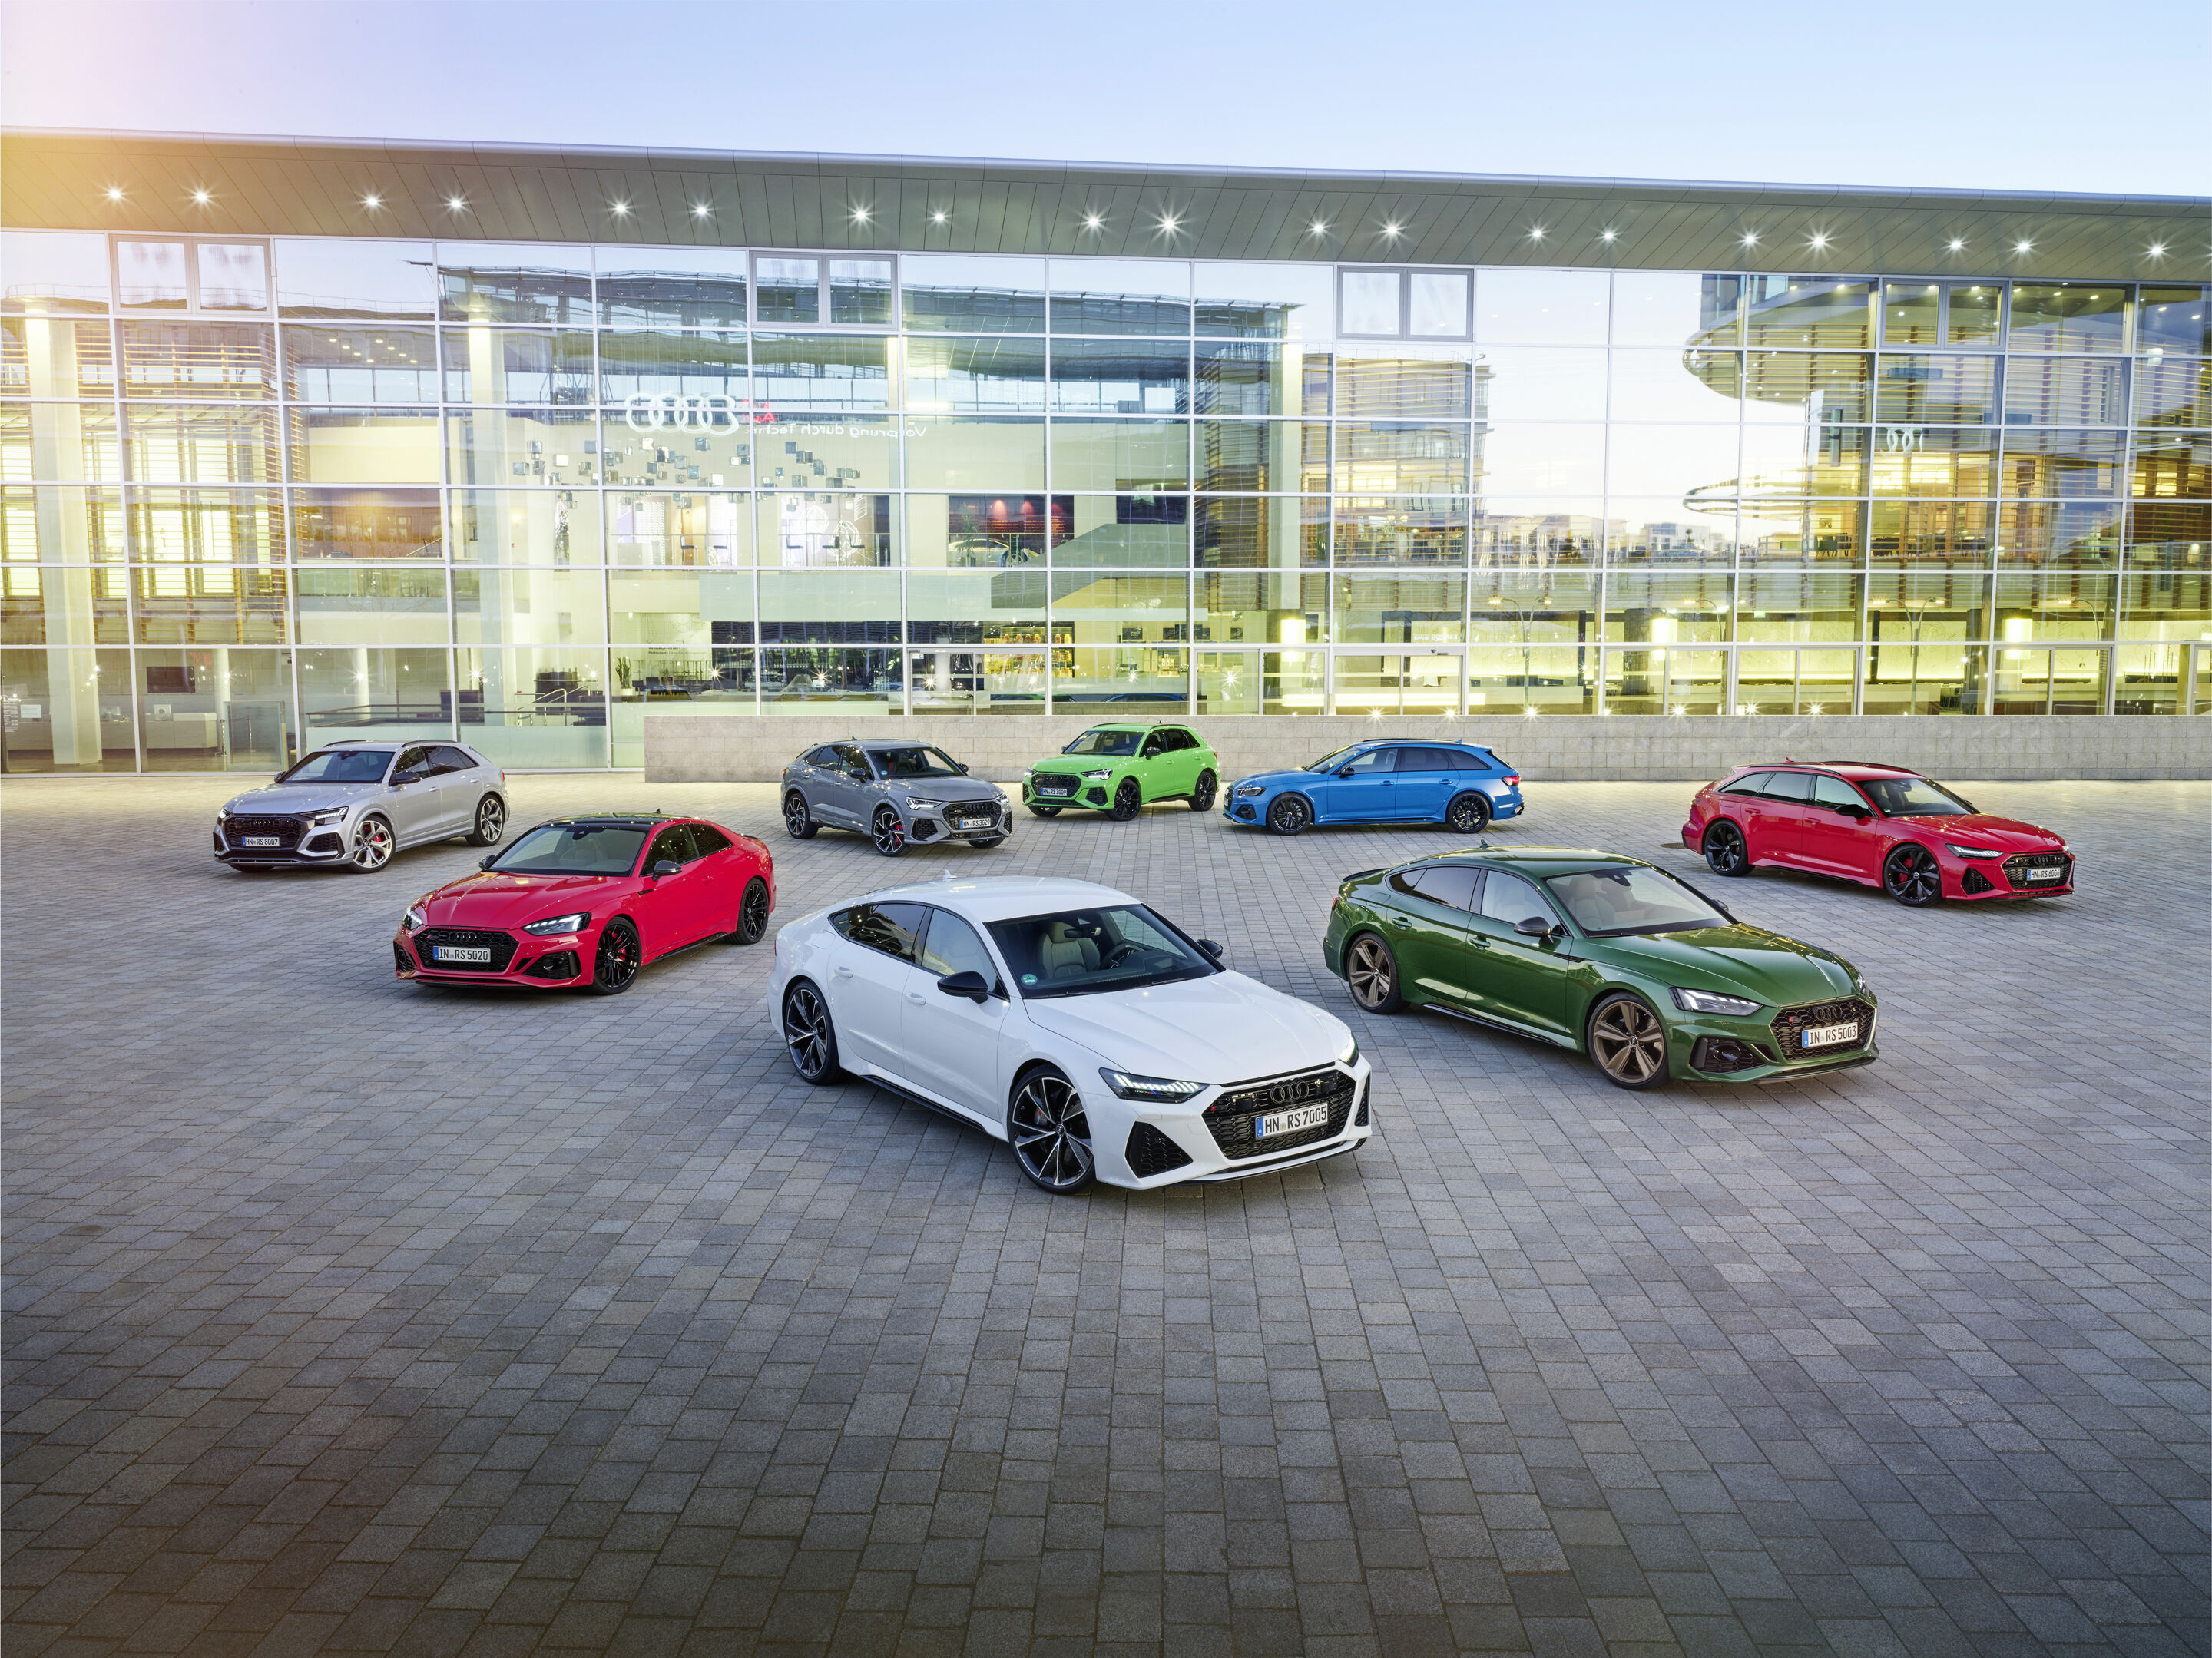 Making of RS: Wie die Audi Sport GmbH  den Charakter ihrer RS-Modelle prägt